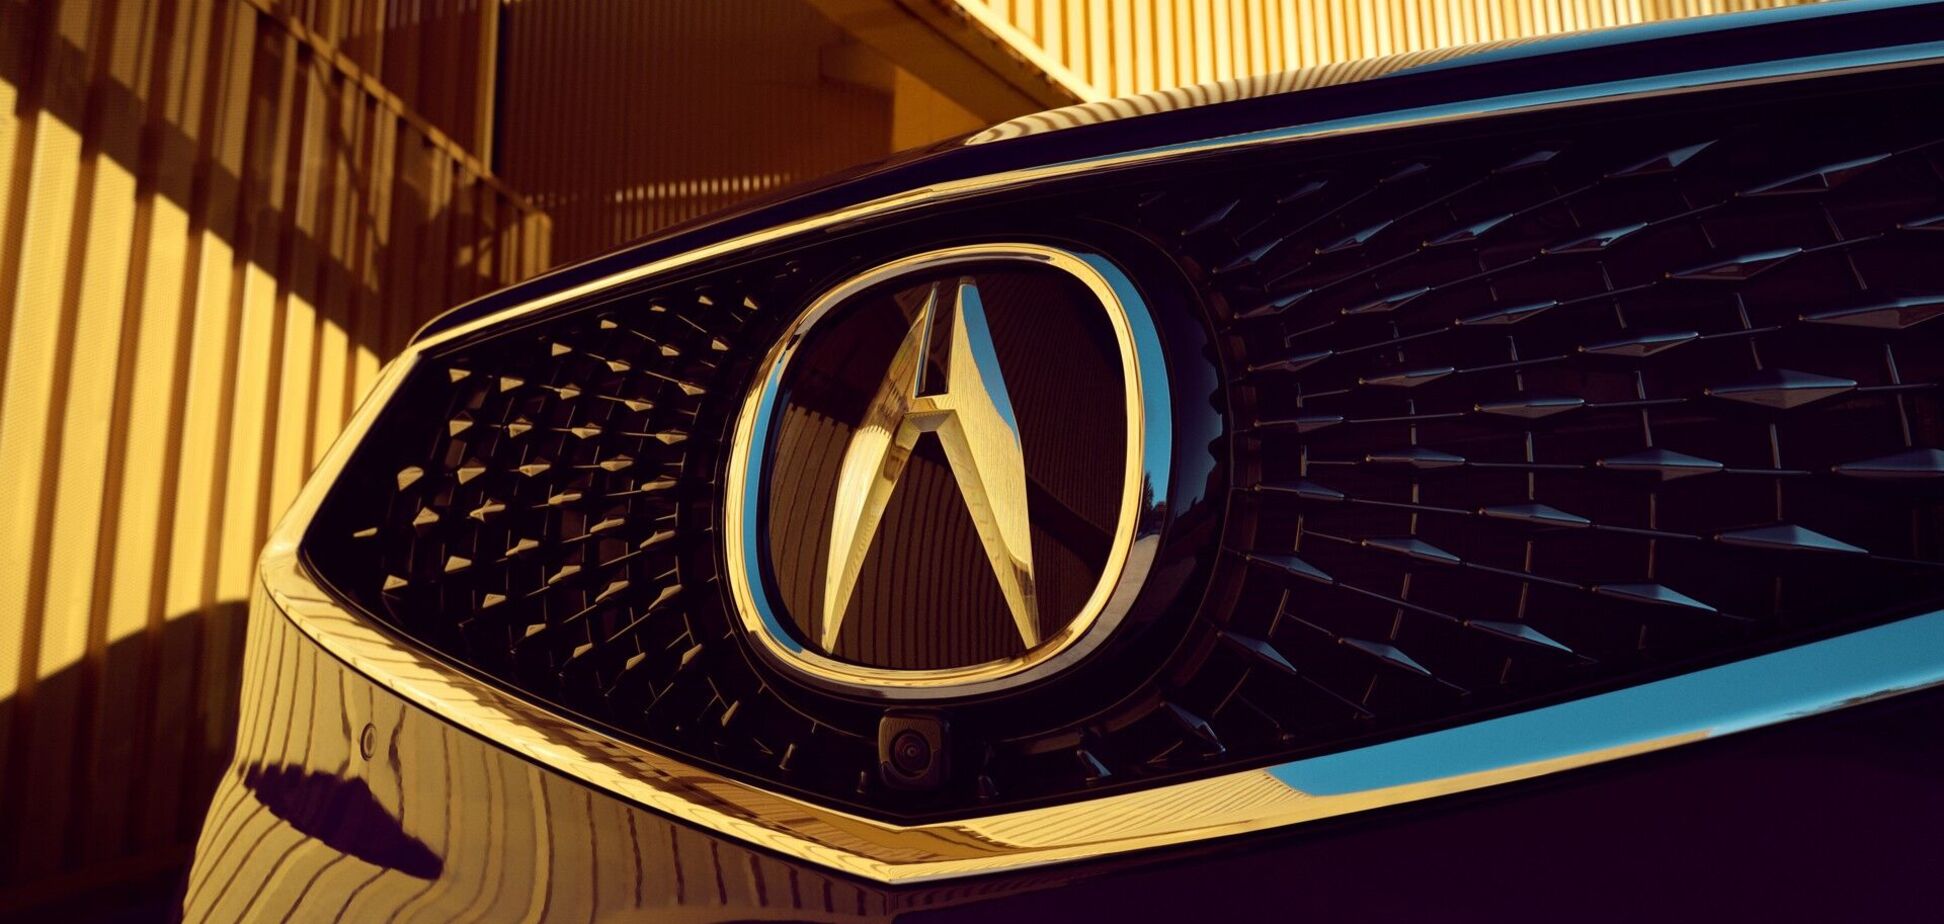 Acura зареєструвала торгову марку ADX